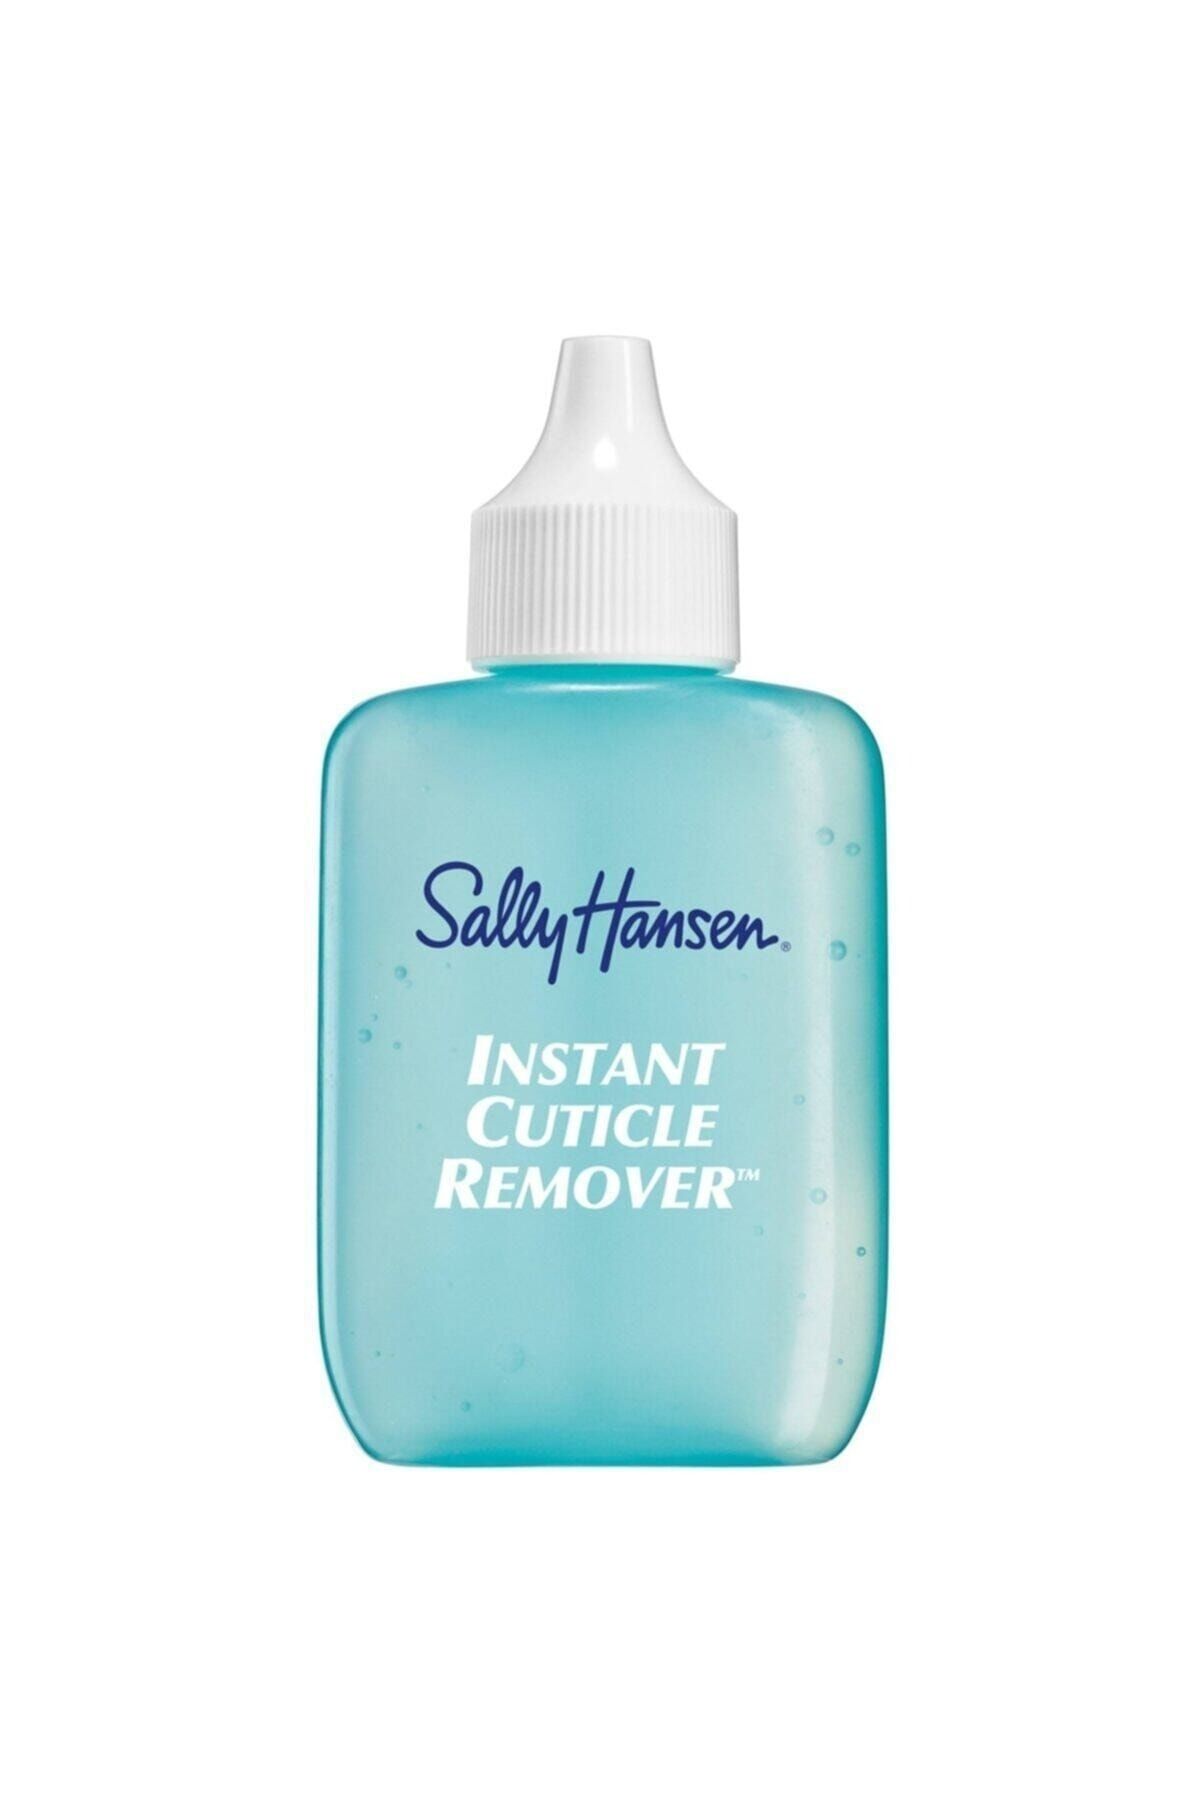 Sally Hansen 15 Saniyede Tırnak Eti Çıkarıcı - Instant Cuticle Remover 074170214550